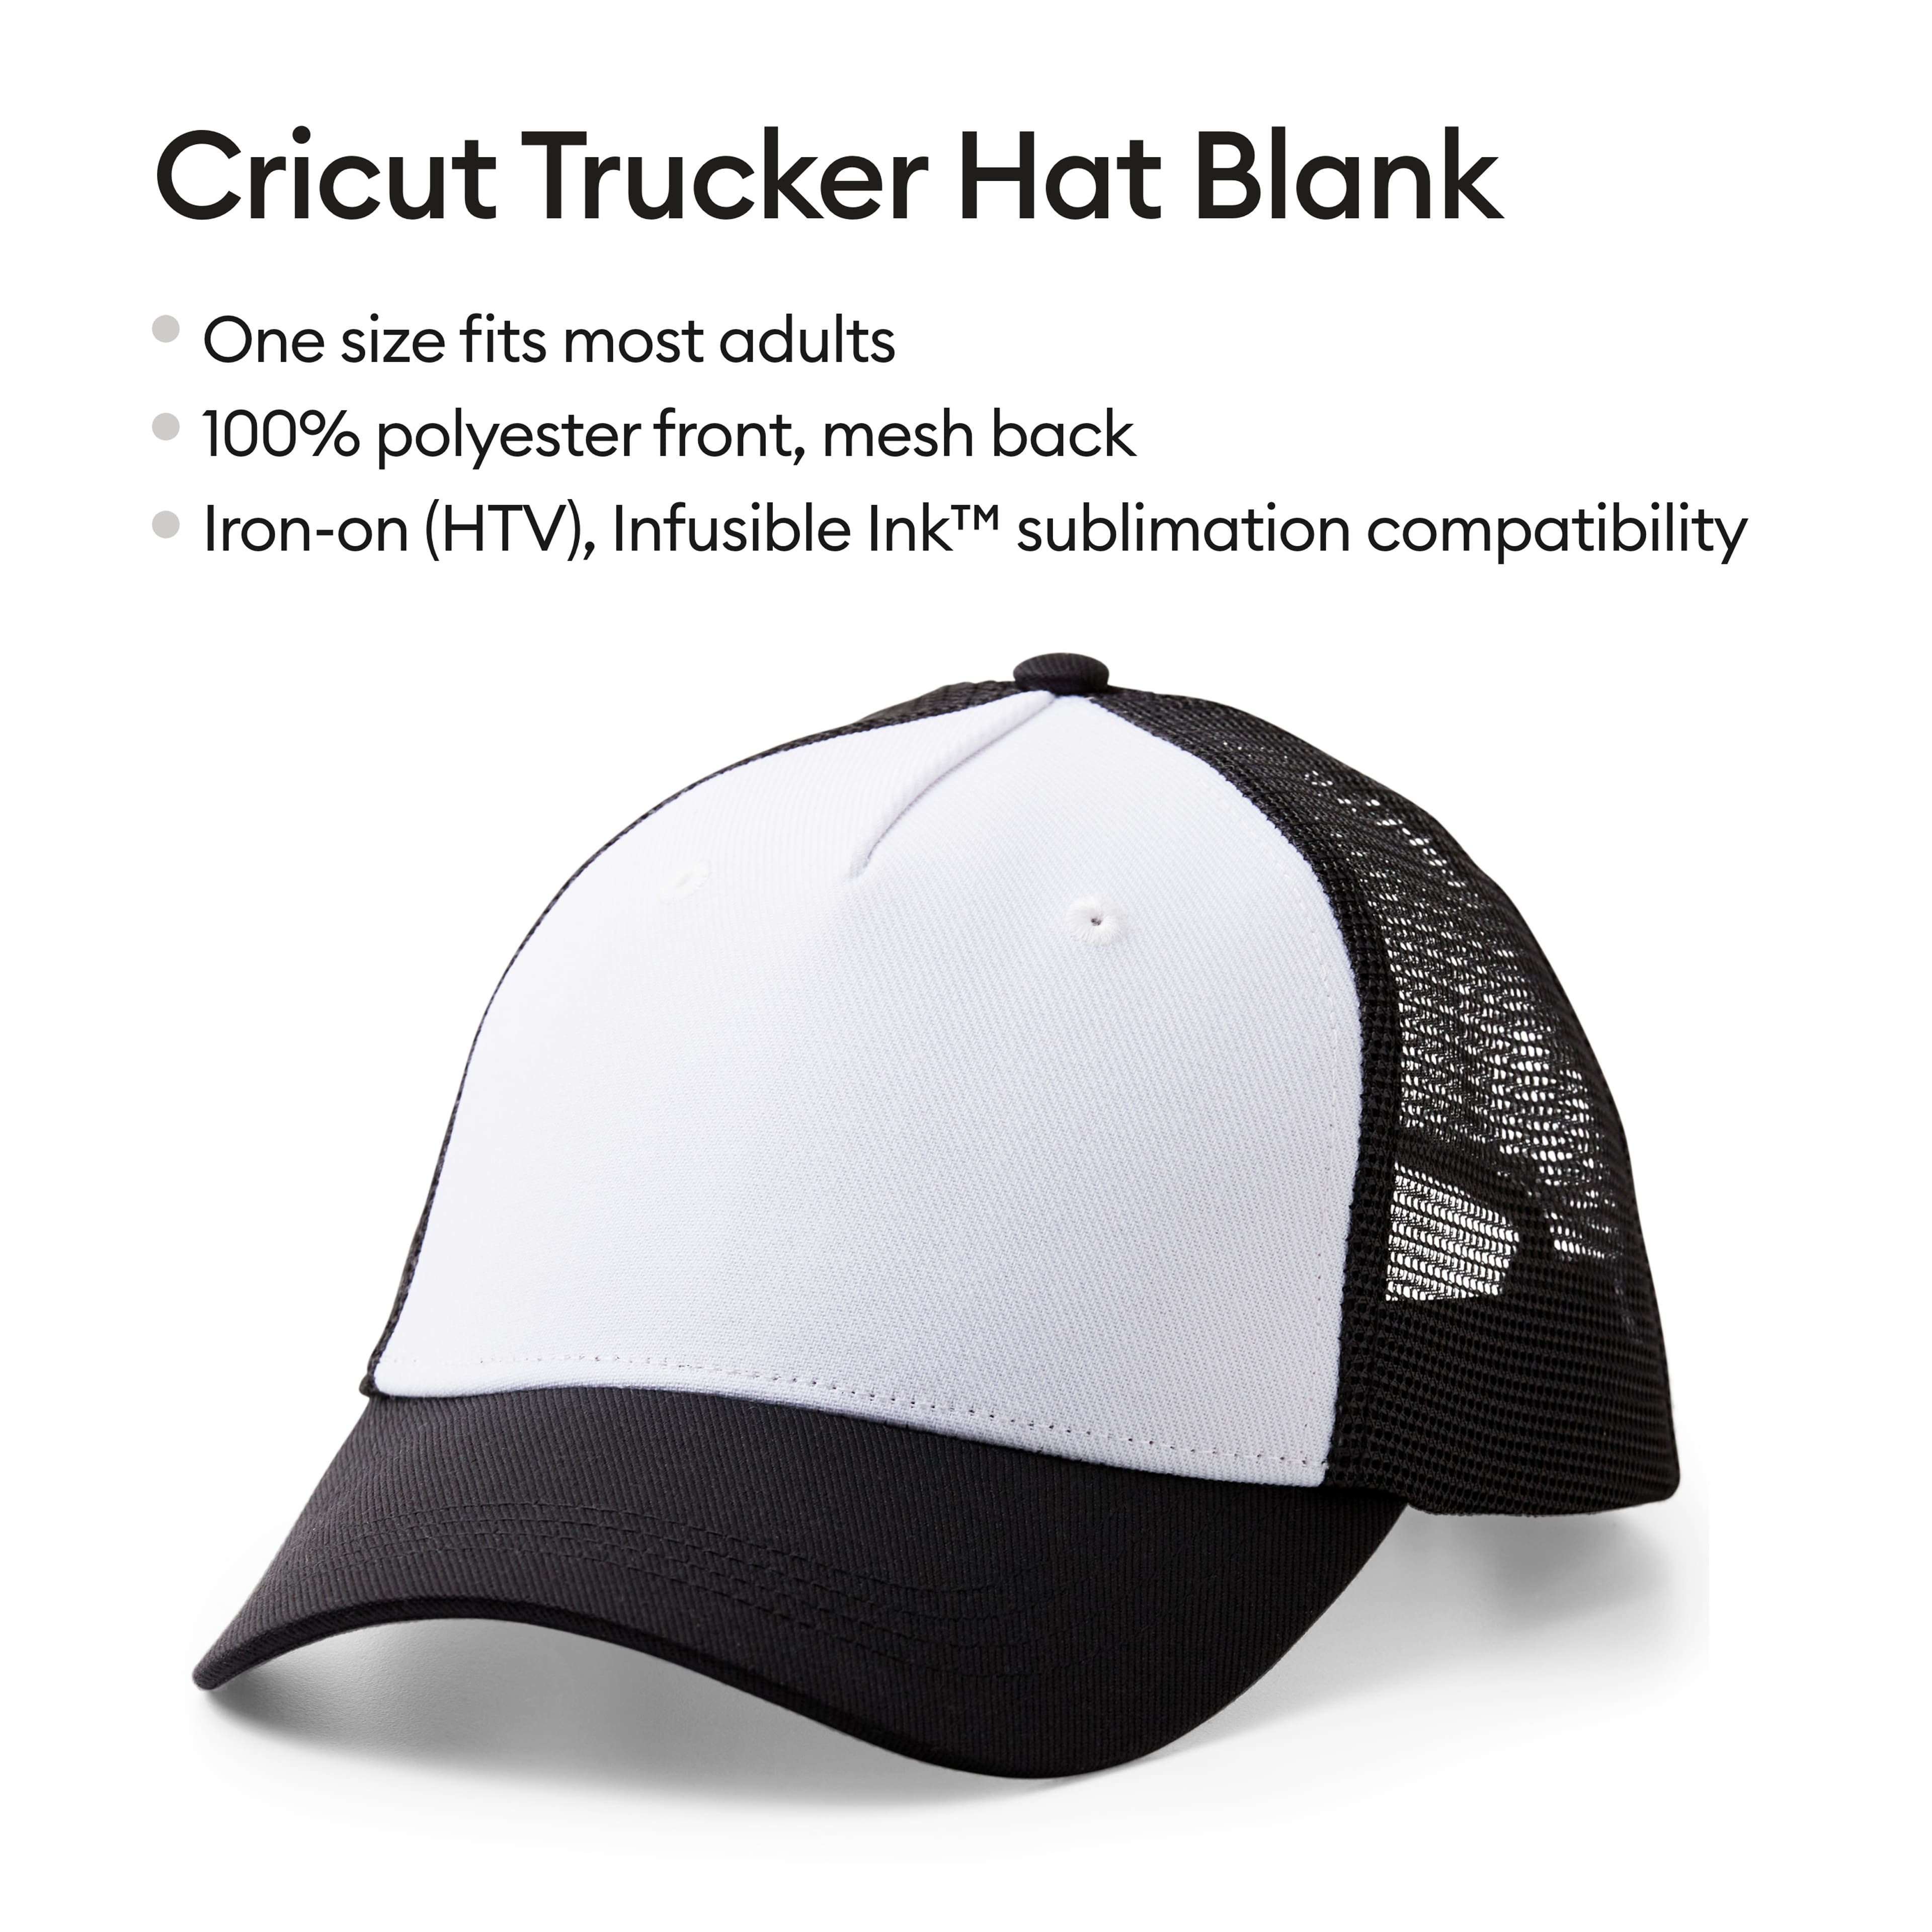 Cricut Trucker Hat Blank